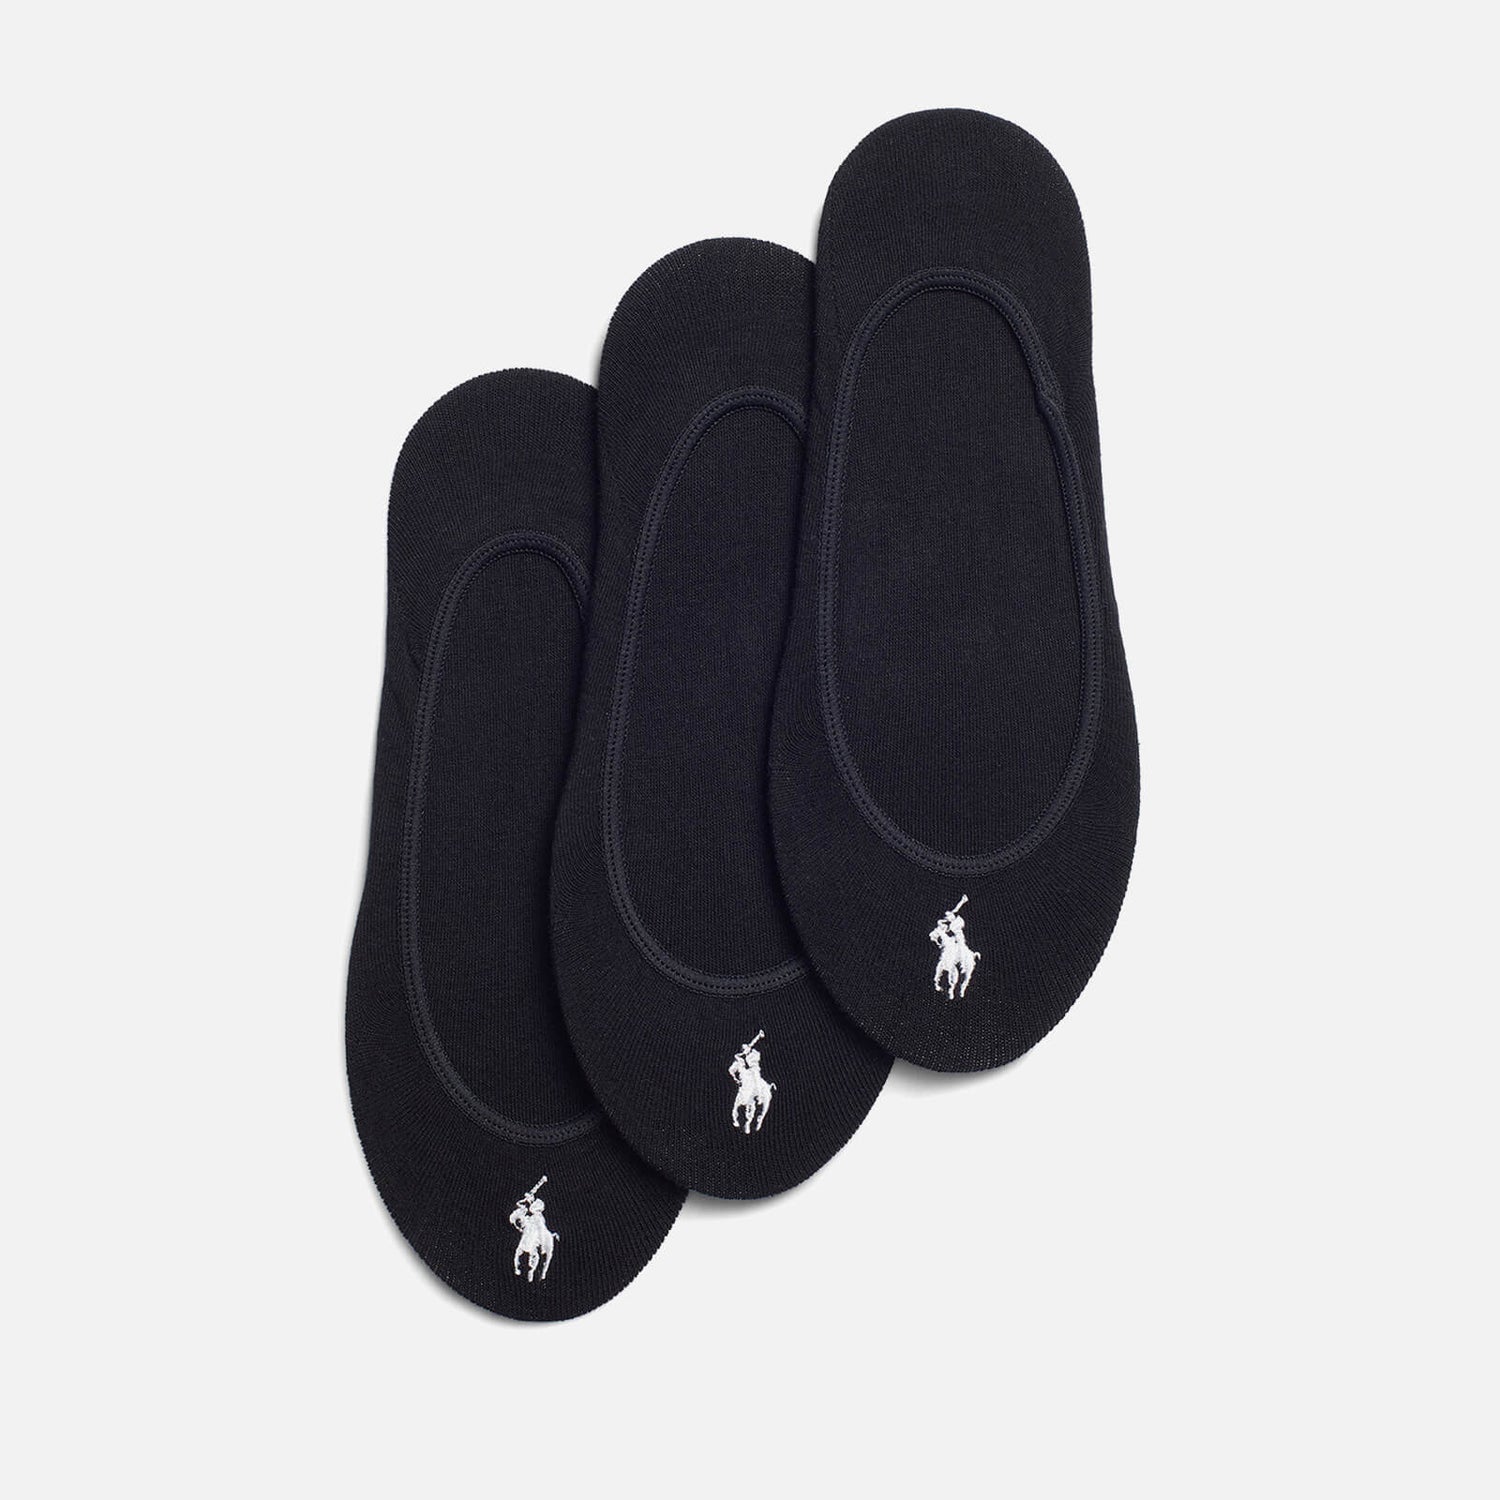 Polo Ralph Lauren Women's Low Liner Socks 3 Pack - Black